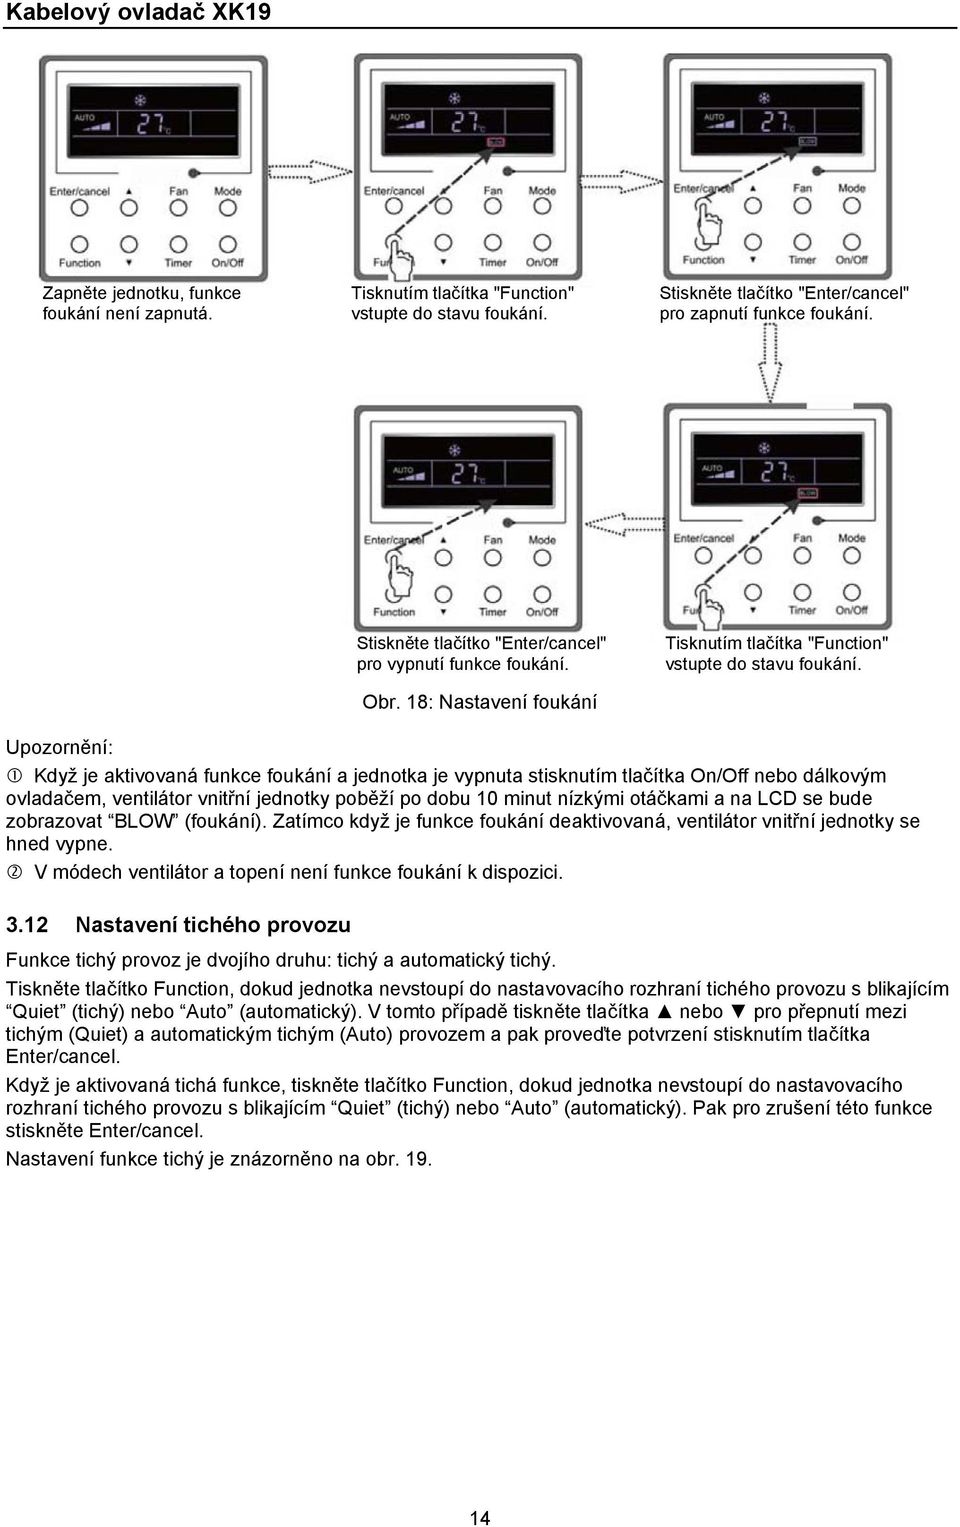 Upozornění: Když je aktivovaná funkce foukání a jednotka je vypnuta stisknutím tlačítka On/Off nebo dálkovým ovladačem, ventilátor vnitřní jednotky poběží po dobu 10 minut nízkými otáčkami a na LCD